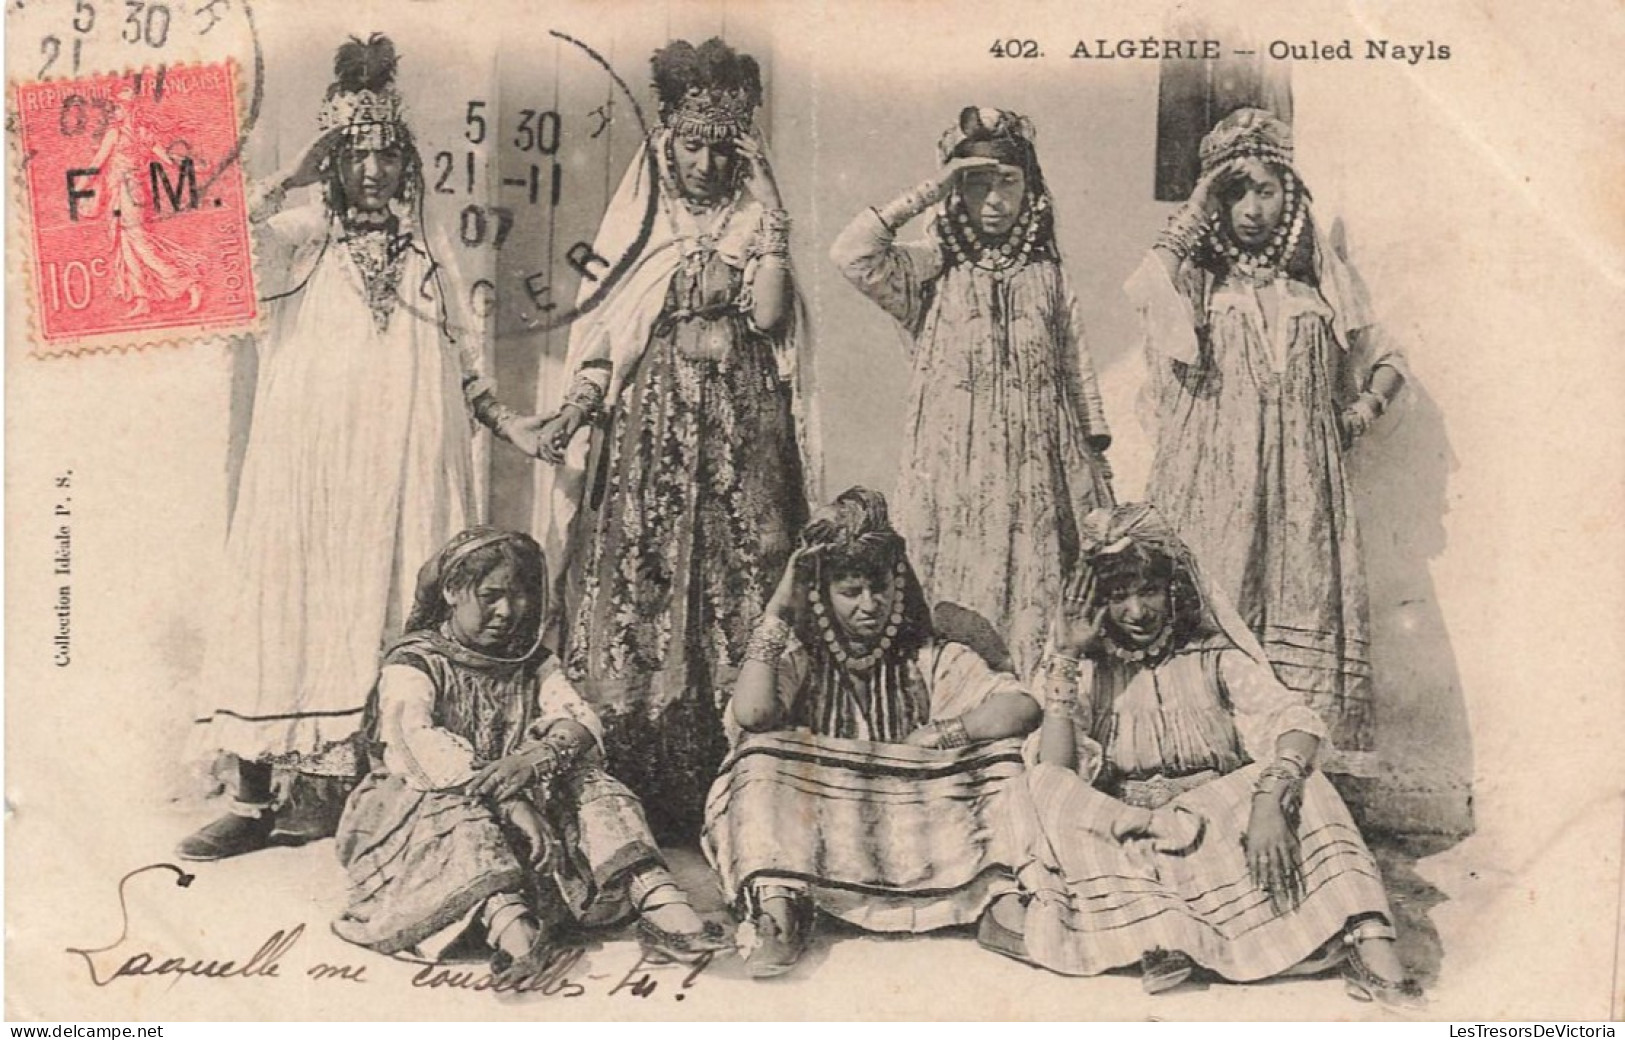 ALGERIE - Ouled Nayls - Groupe De Femmes Avec Des Habits Ornés De Bijoux - Carte Postale Ancienne - Mujeres